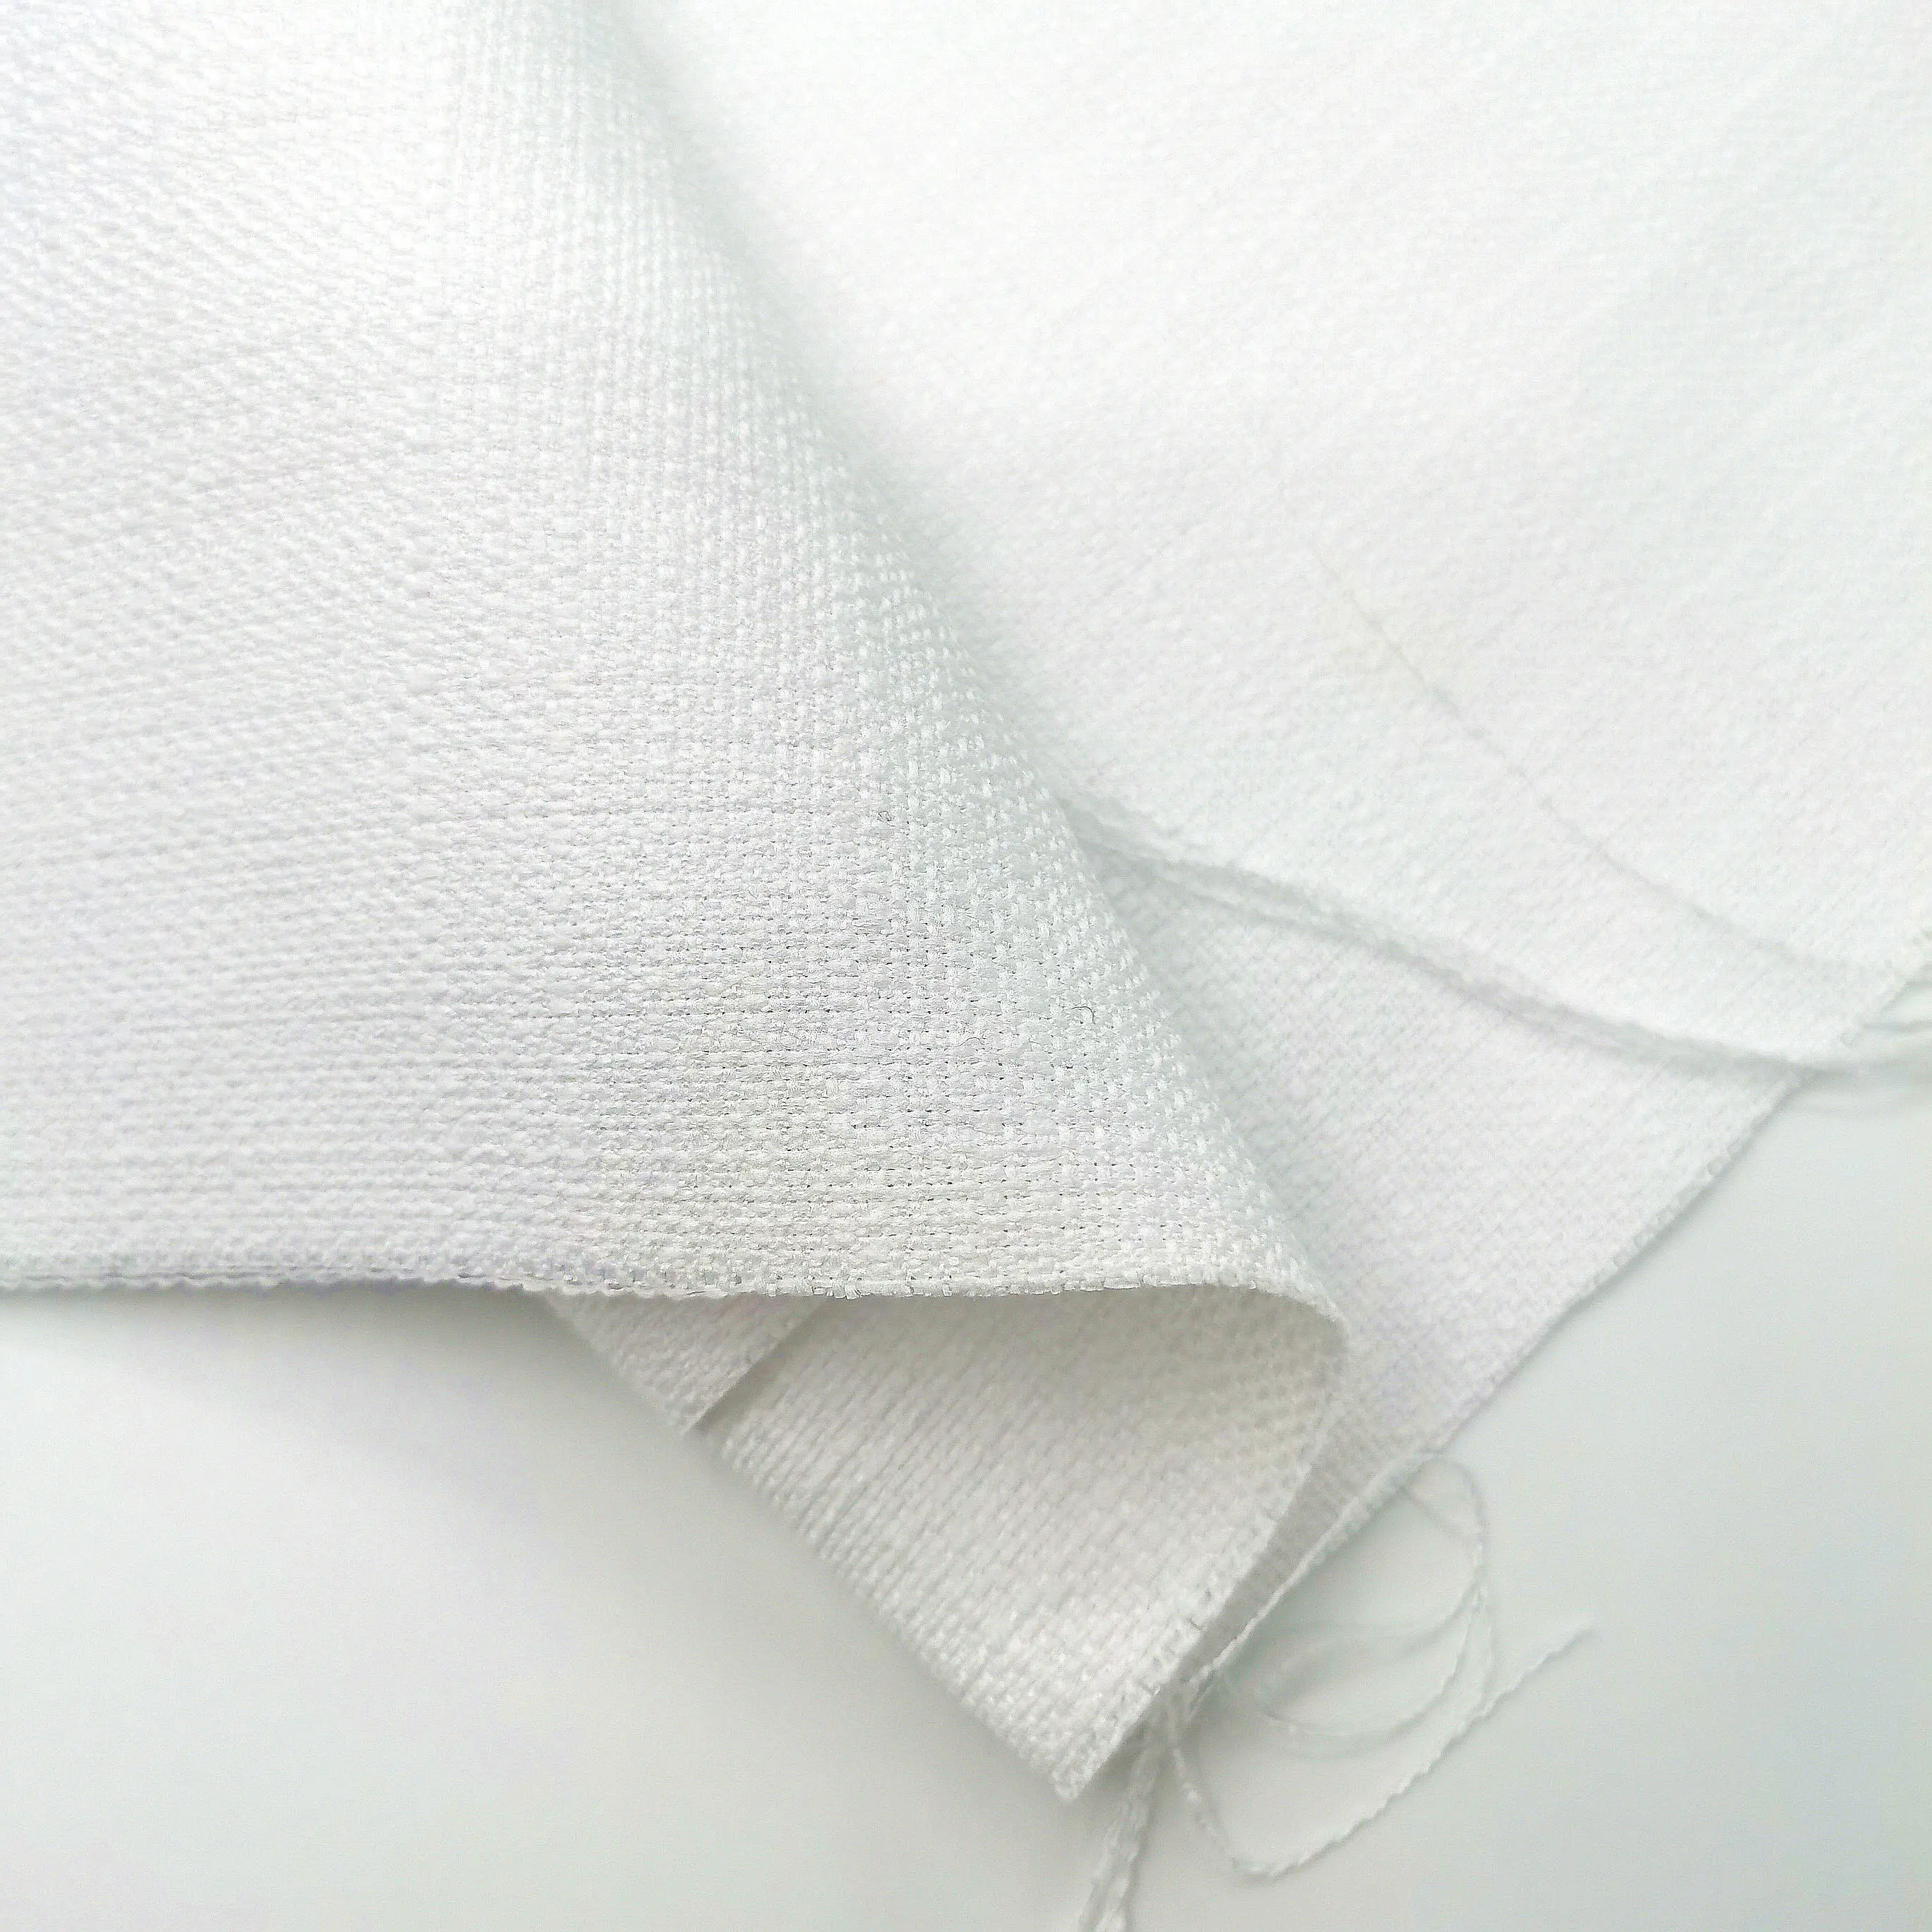 Tissu de rembourrage blanc en Polyester, imitation lin, vente en gros, 250 g/m², pour impression par Sublimation